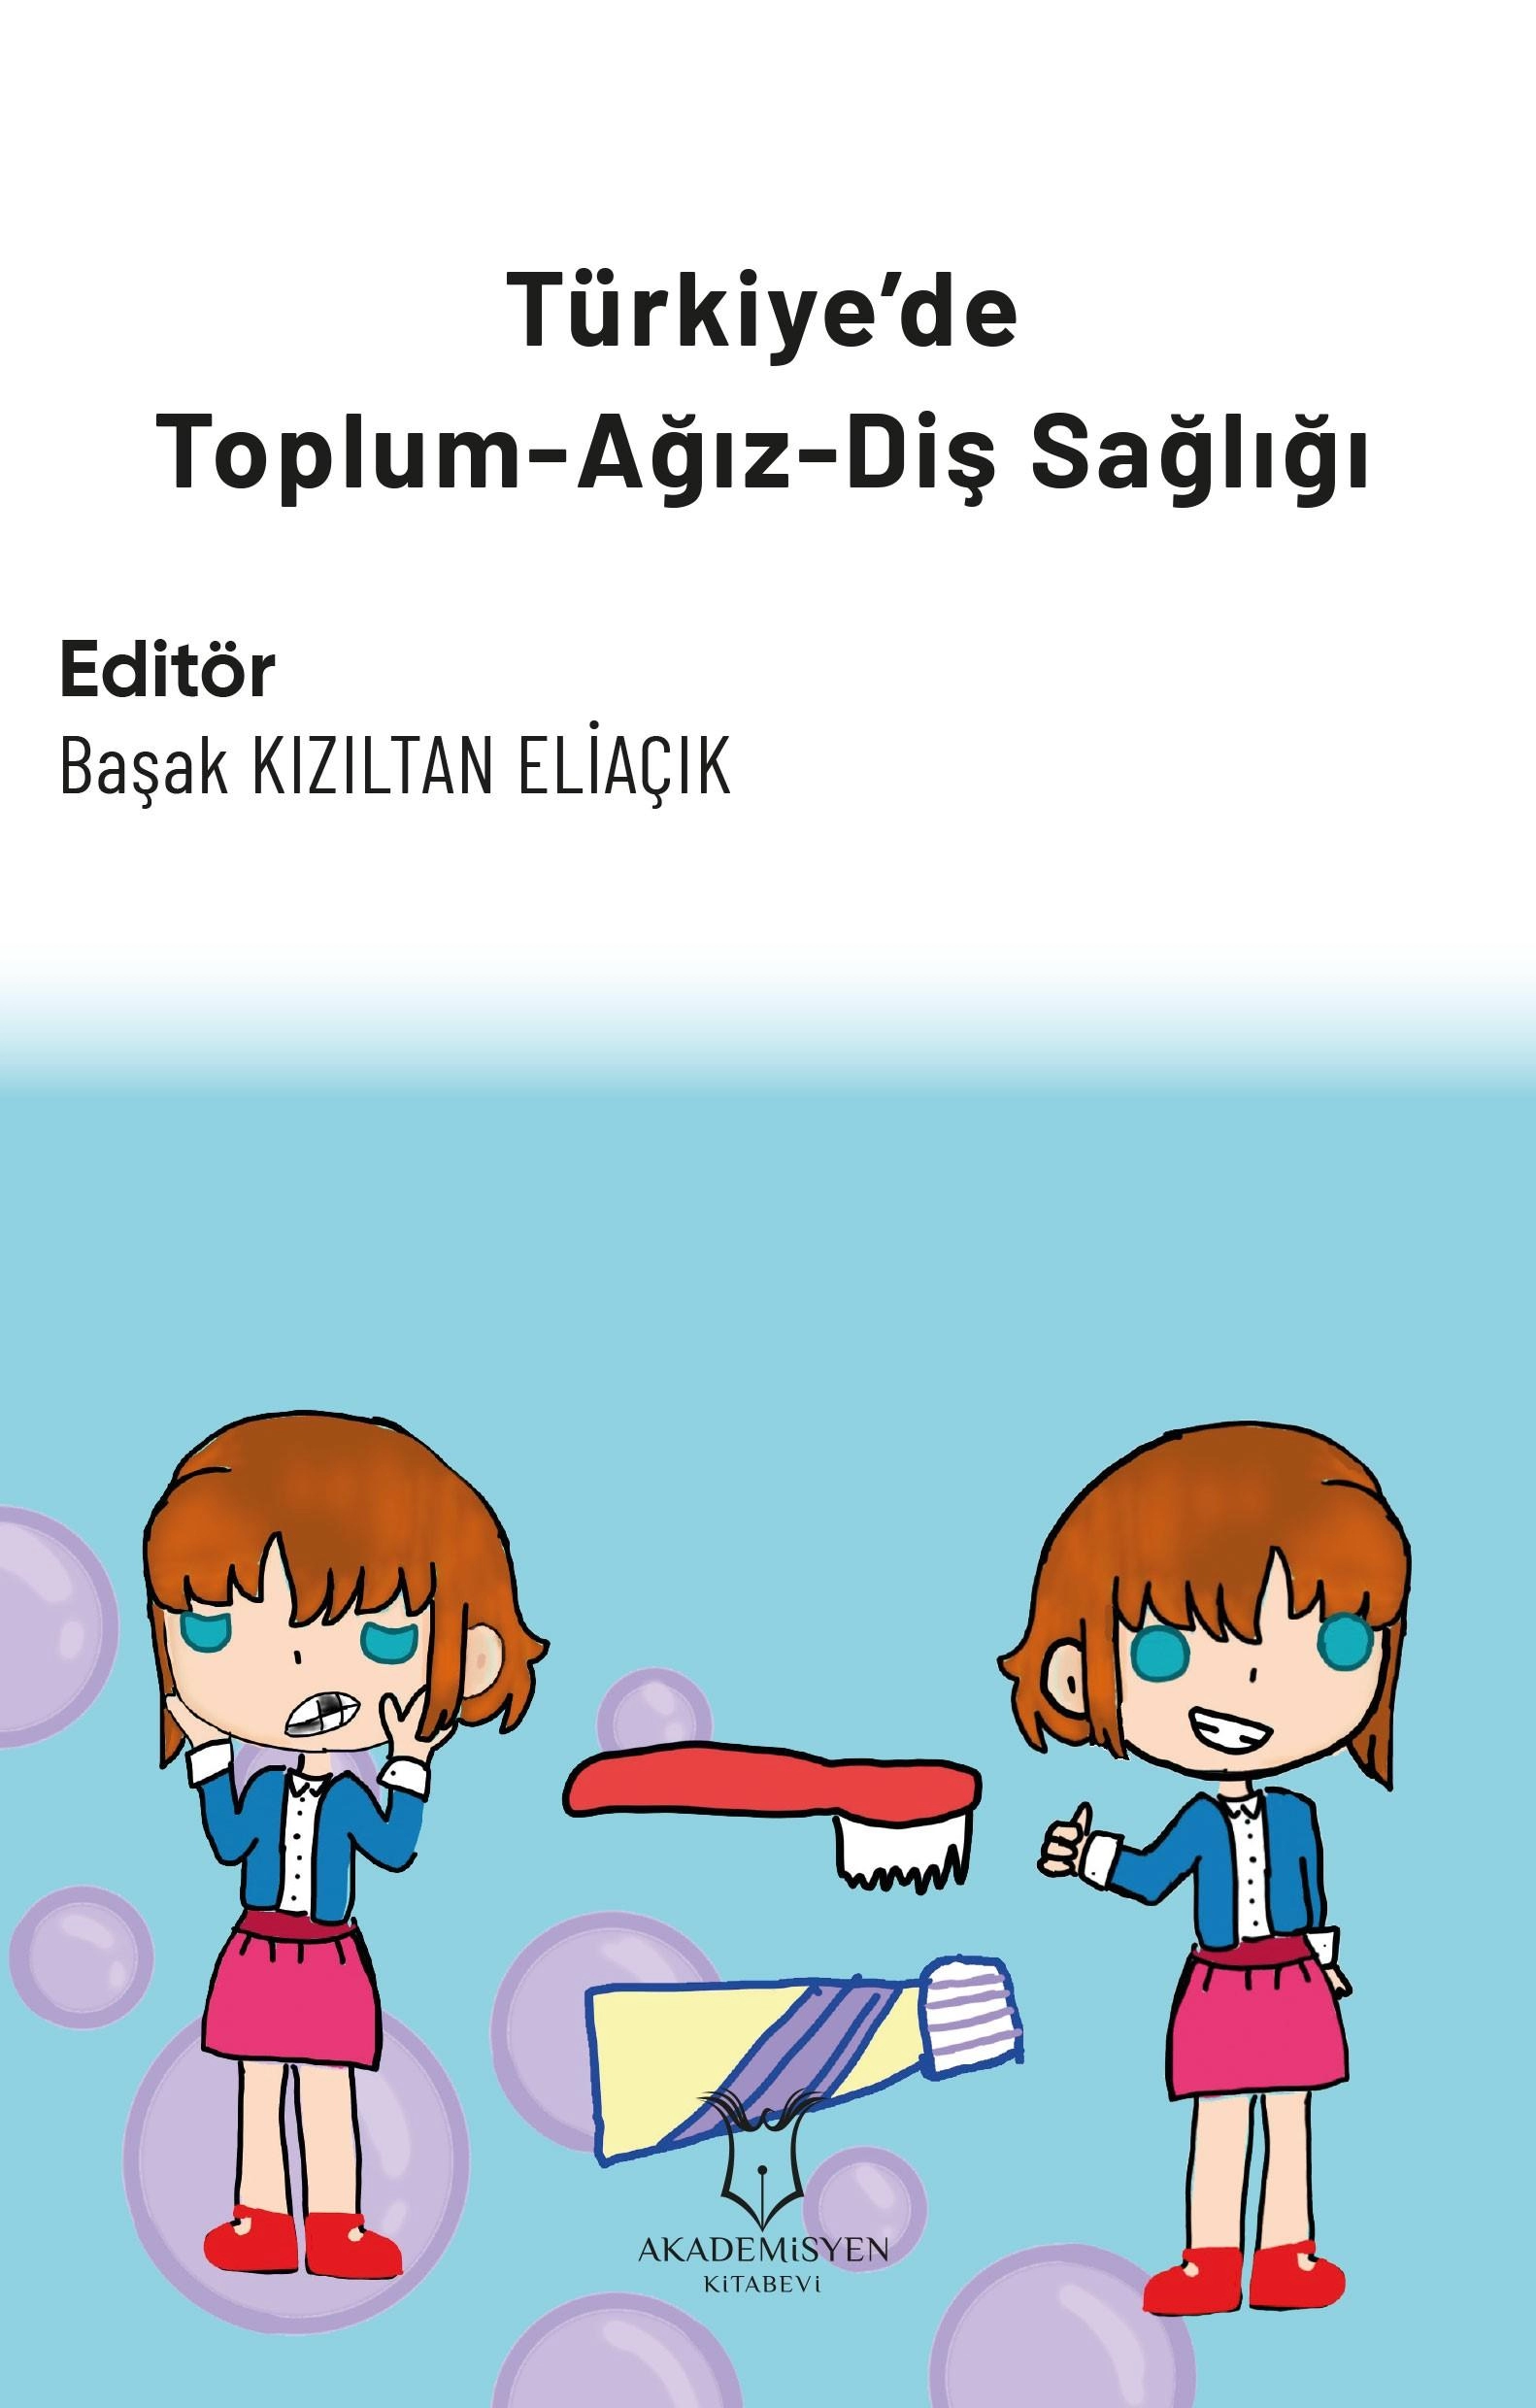 Turkiye’de-Toplum-Agiz-Dis-Sagligi